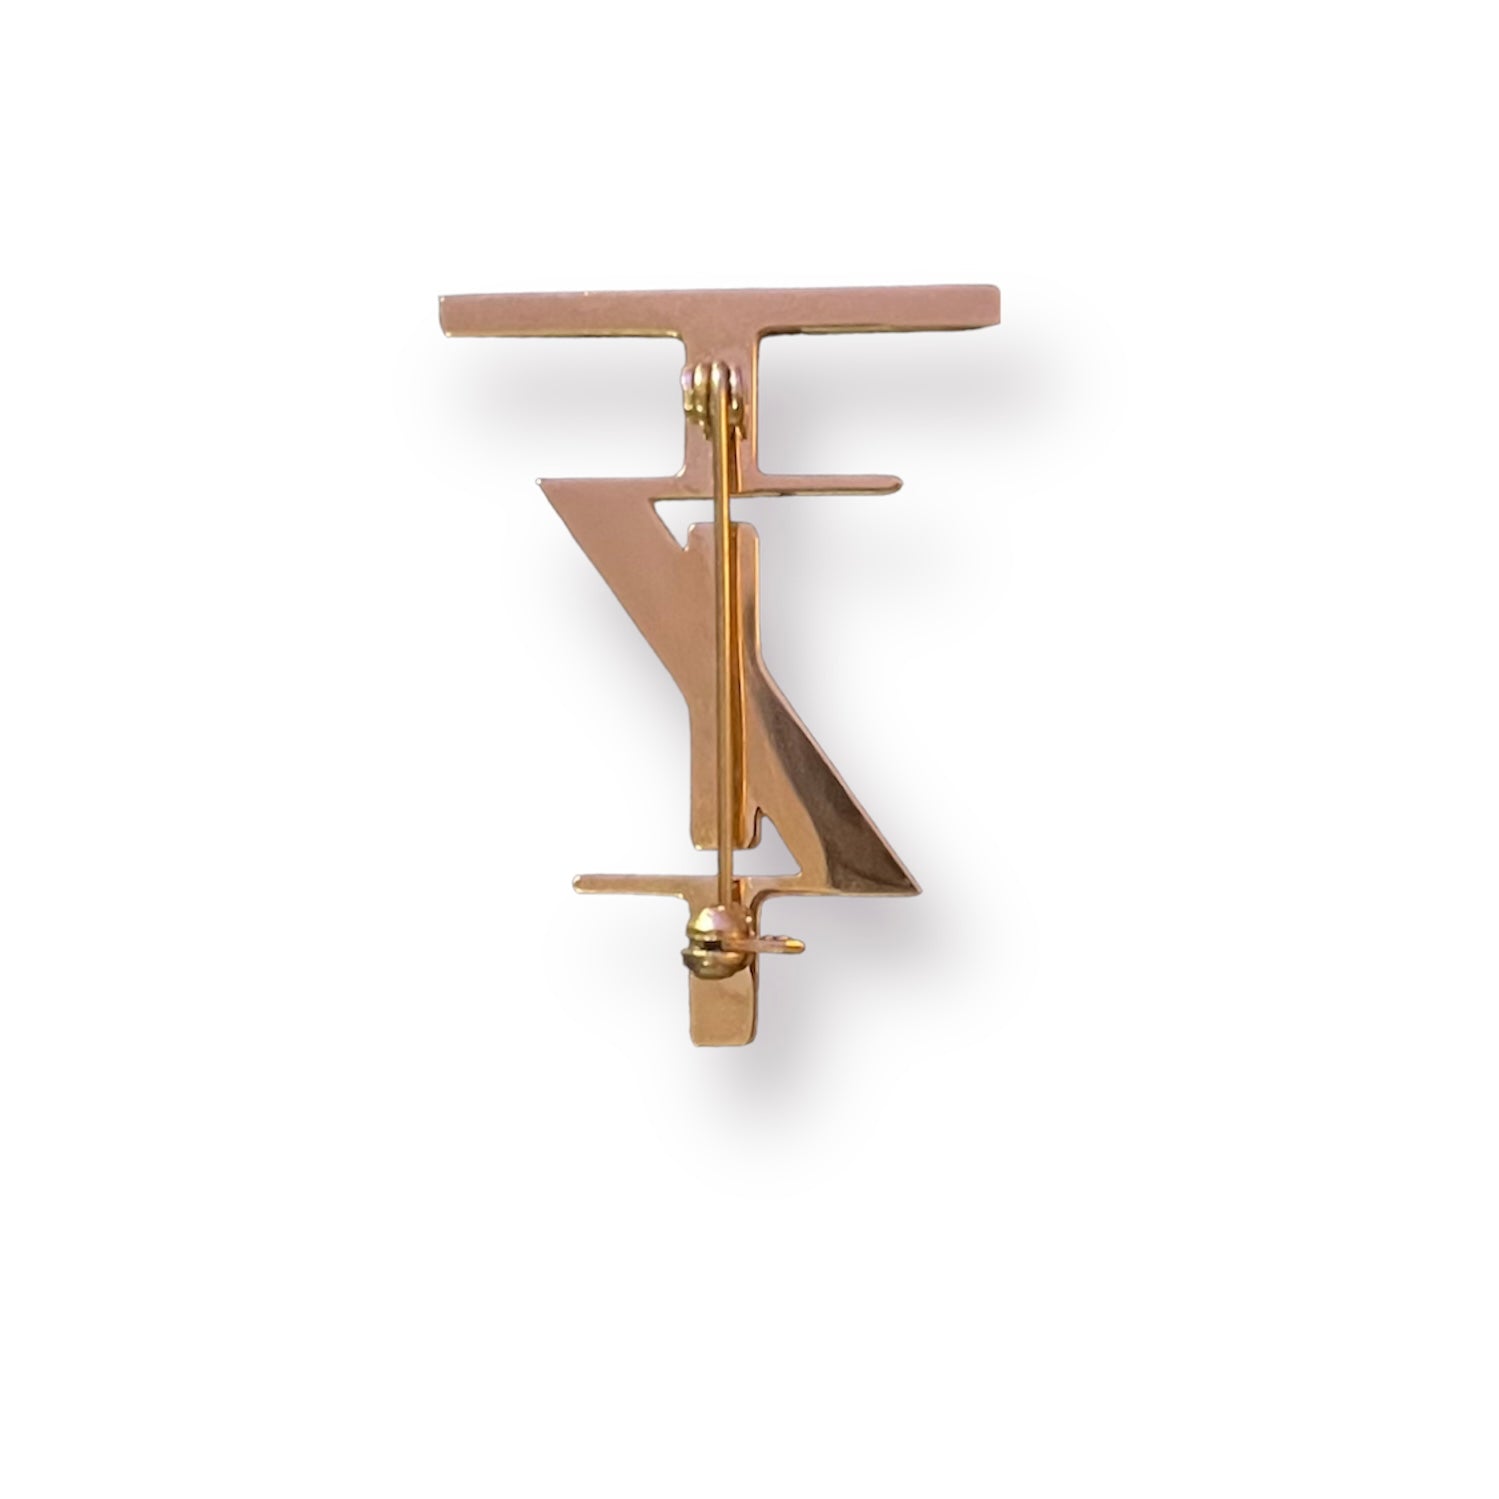 TZ Monogram Brooch - GOLD